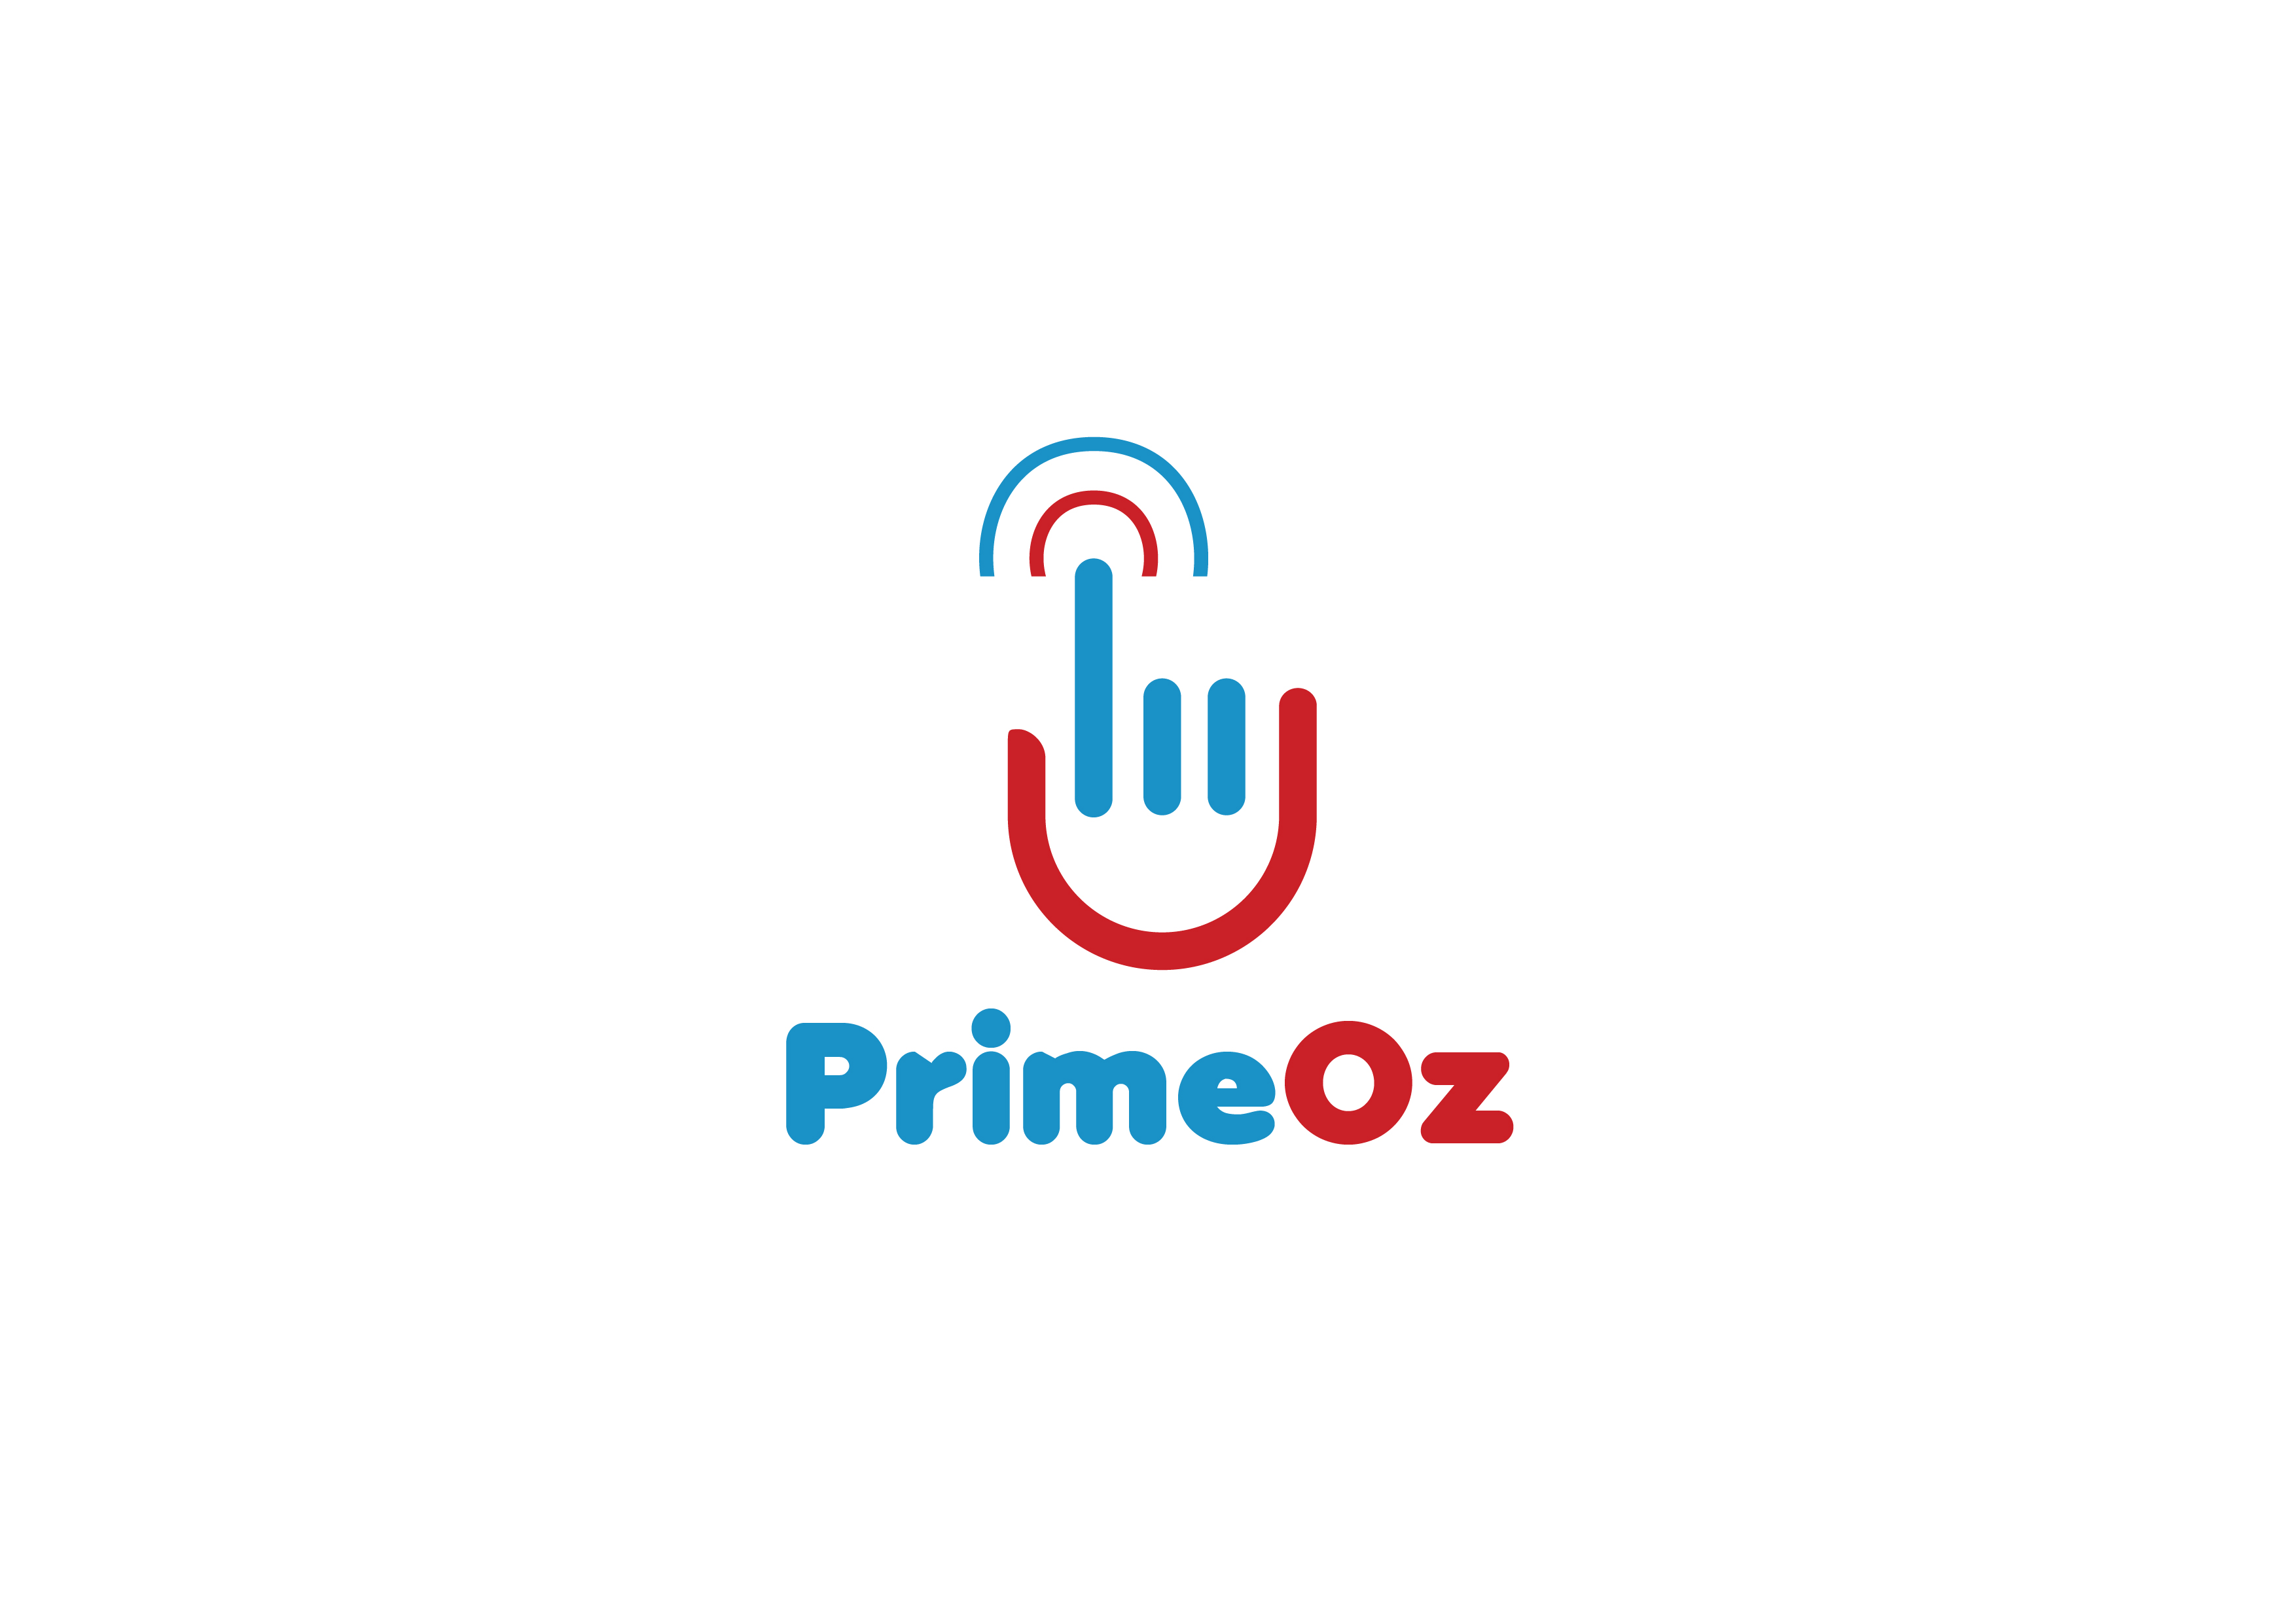 PrimeOz